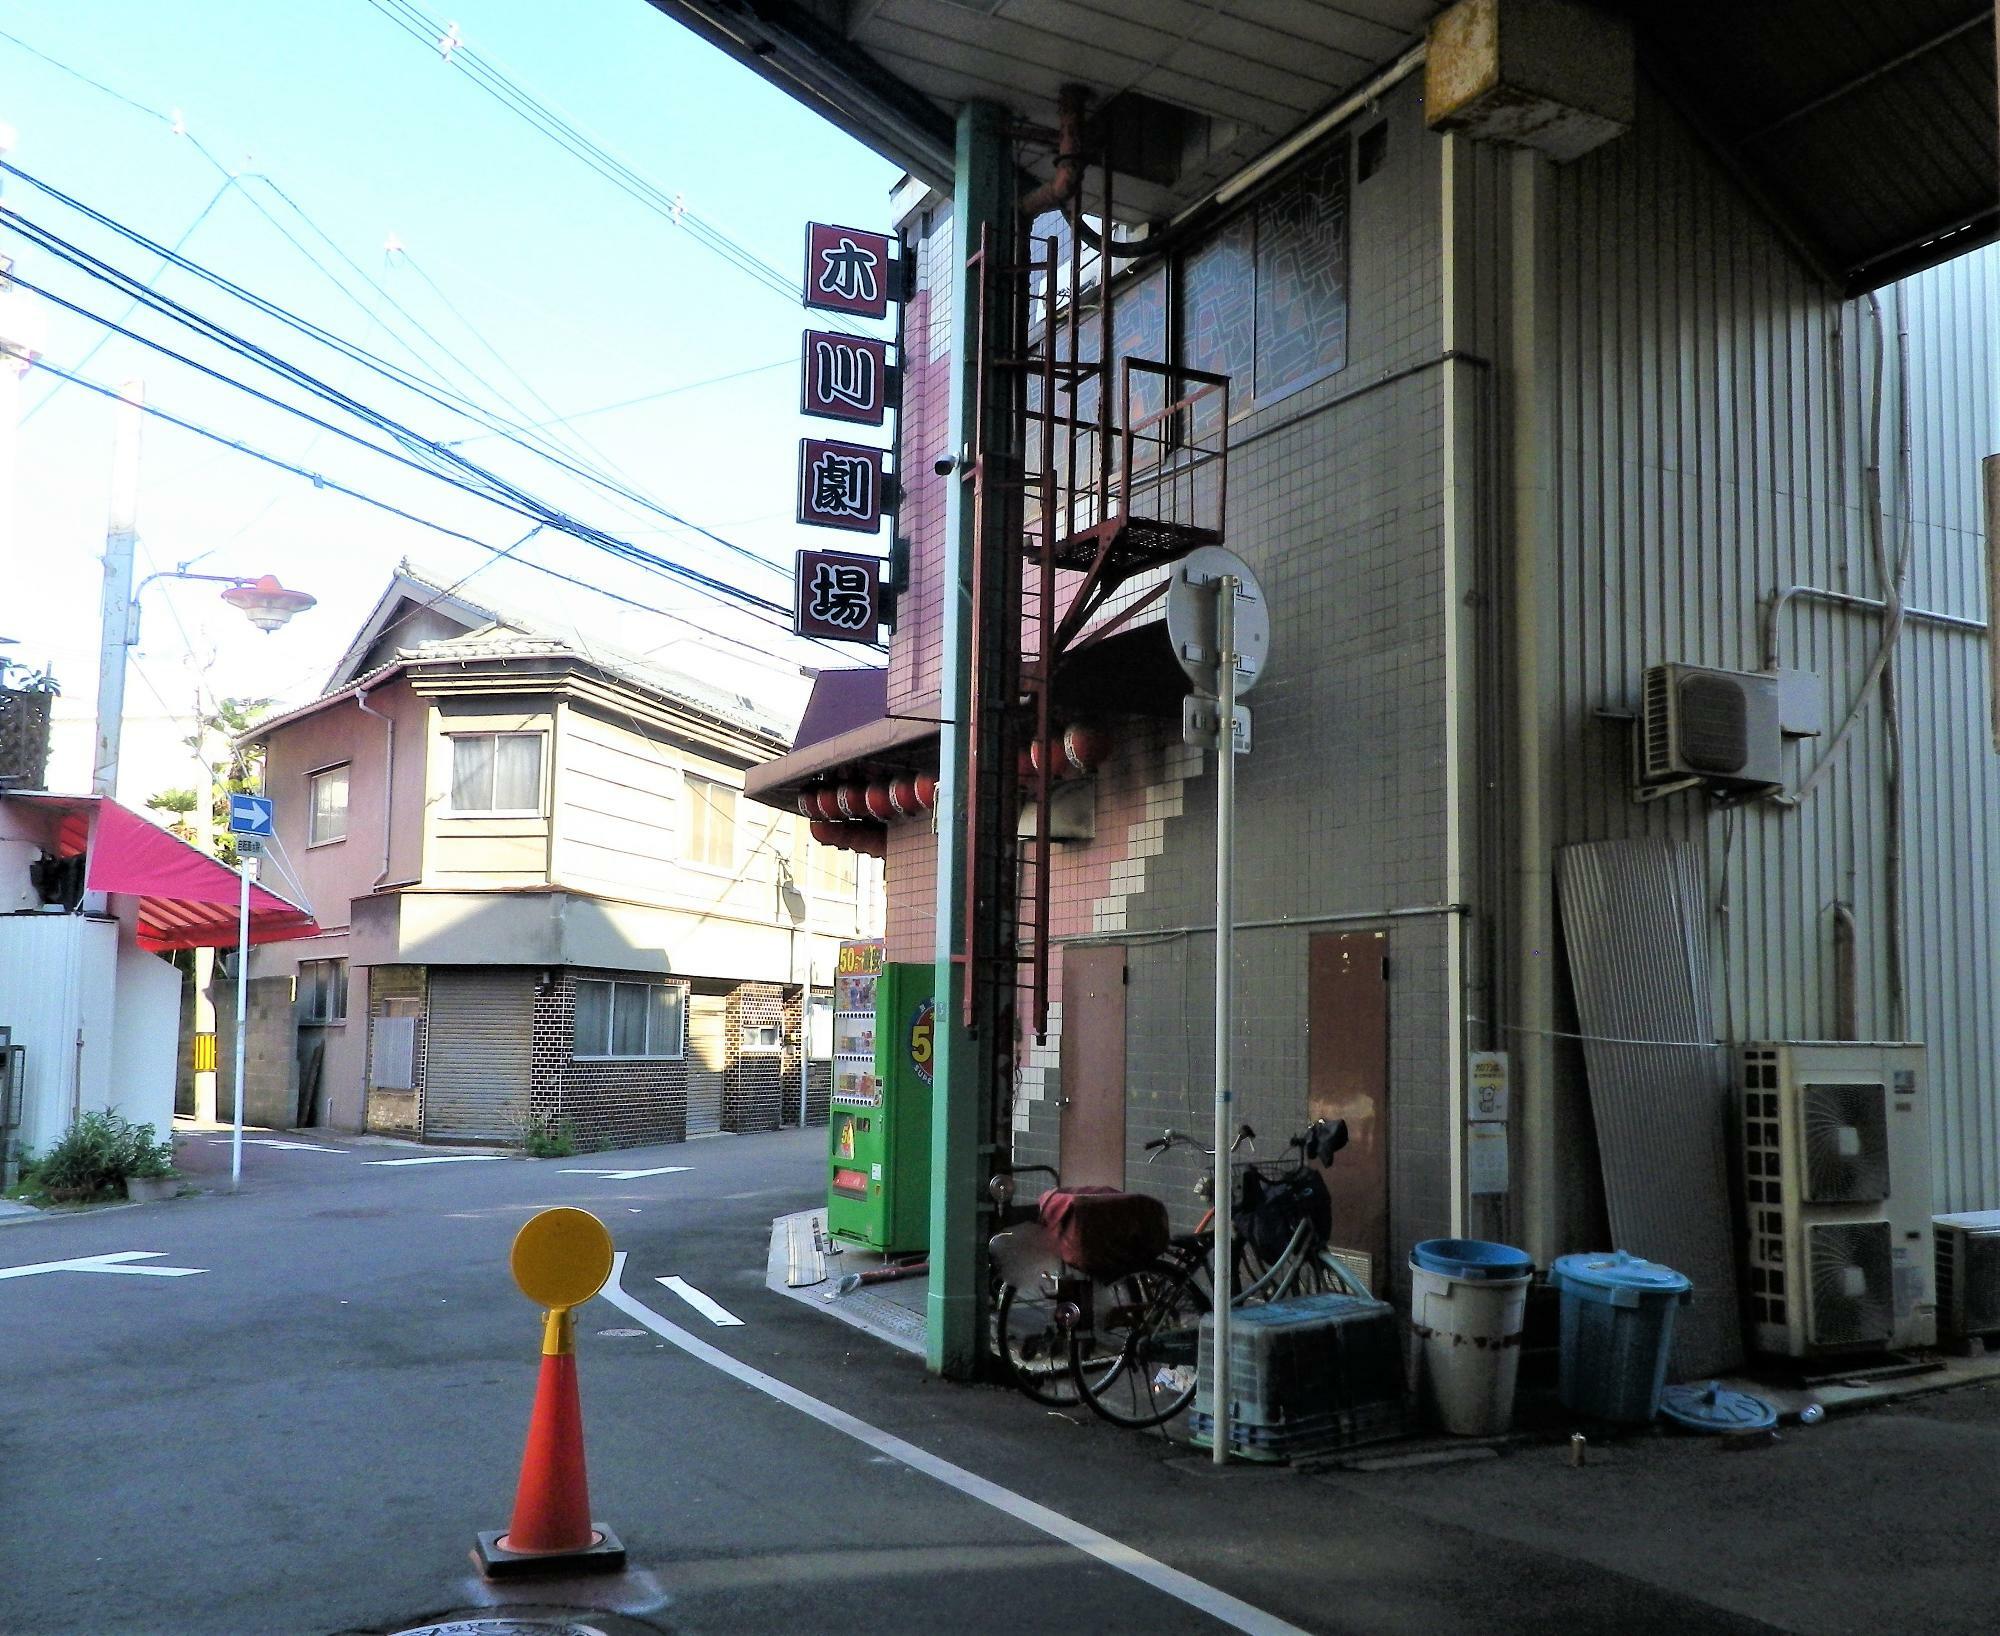 向こうに見えるのは、昔ながらの木川の住宅街。